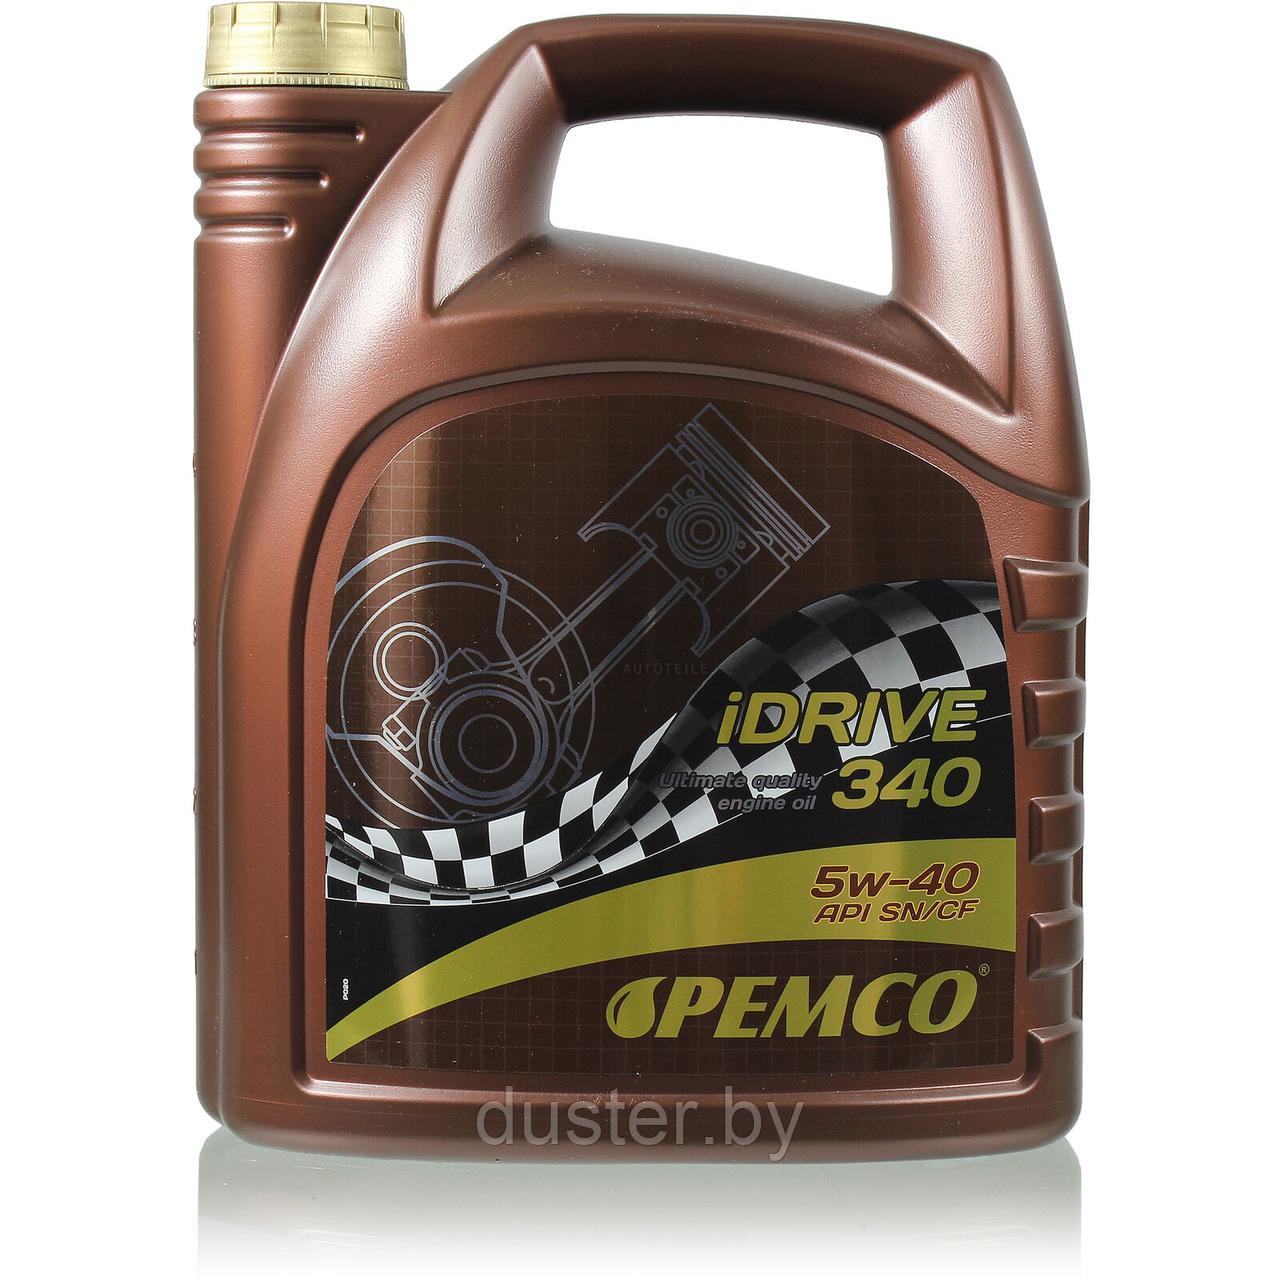 Масло моторное PEMCO iDRIVE 340 5W-40 RN710 (5 л) 100% качество! (Германия)